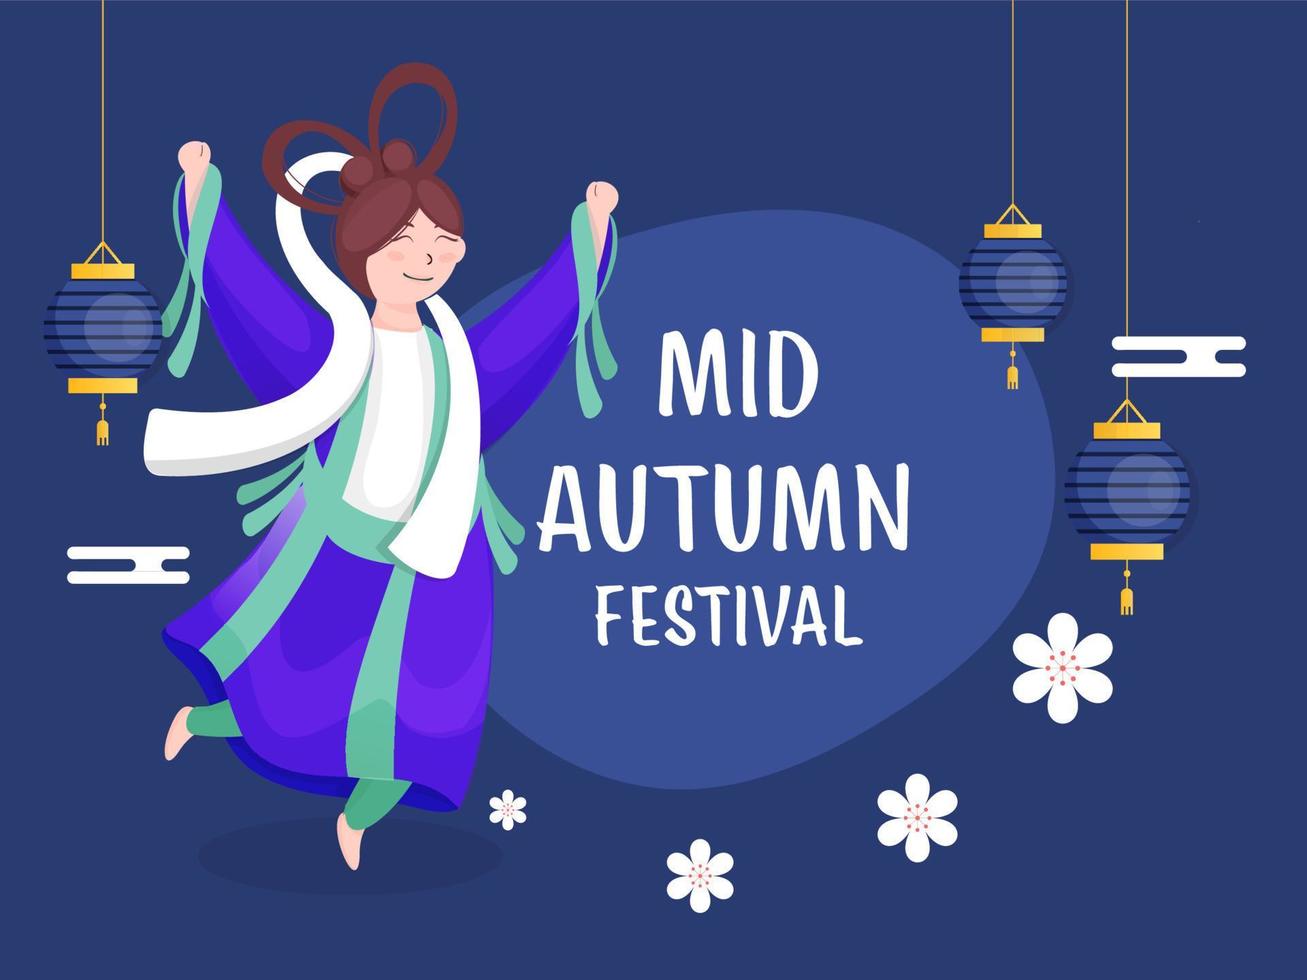 Chinesisch Göttin Charakter im Springen Pose mit Blumen und hängend Laternen dekoriert auf Blau Hintergrund zum Mitte Herbst Festival. vektor